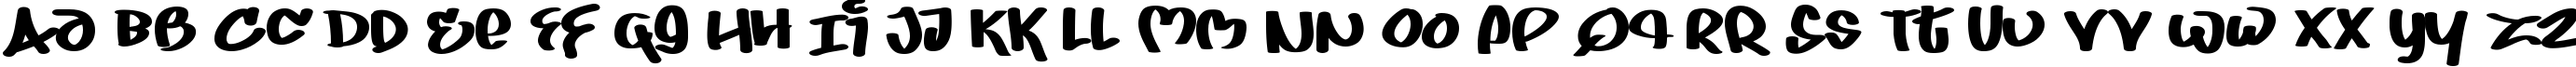 Пример написания английского алфавита шрифтом Juice